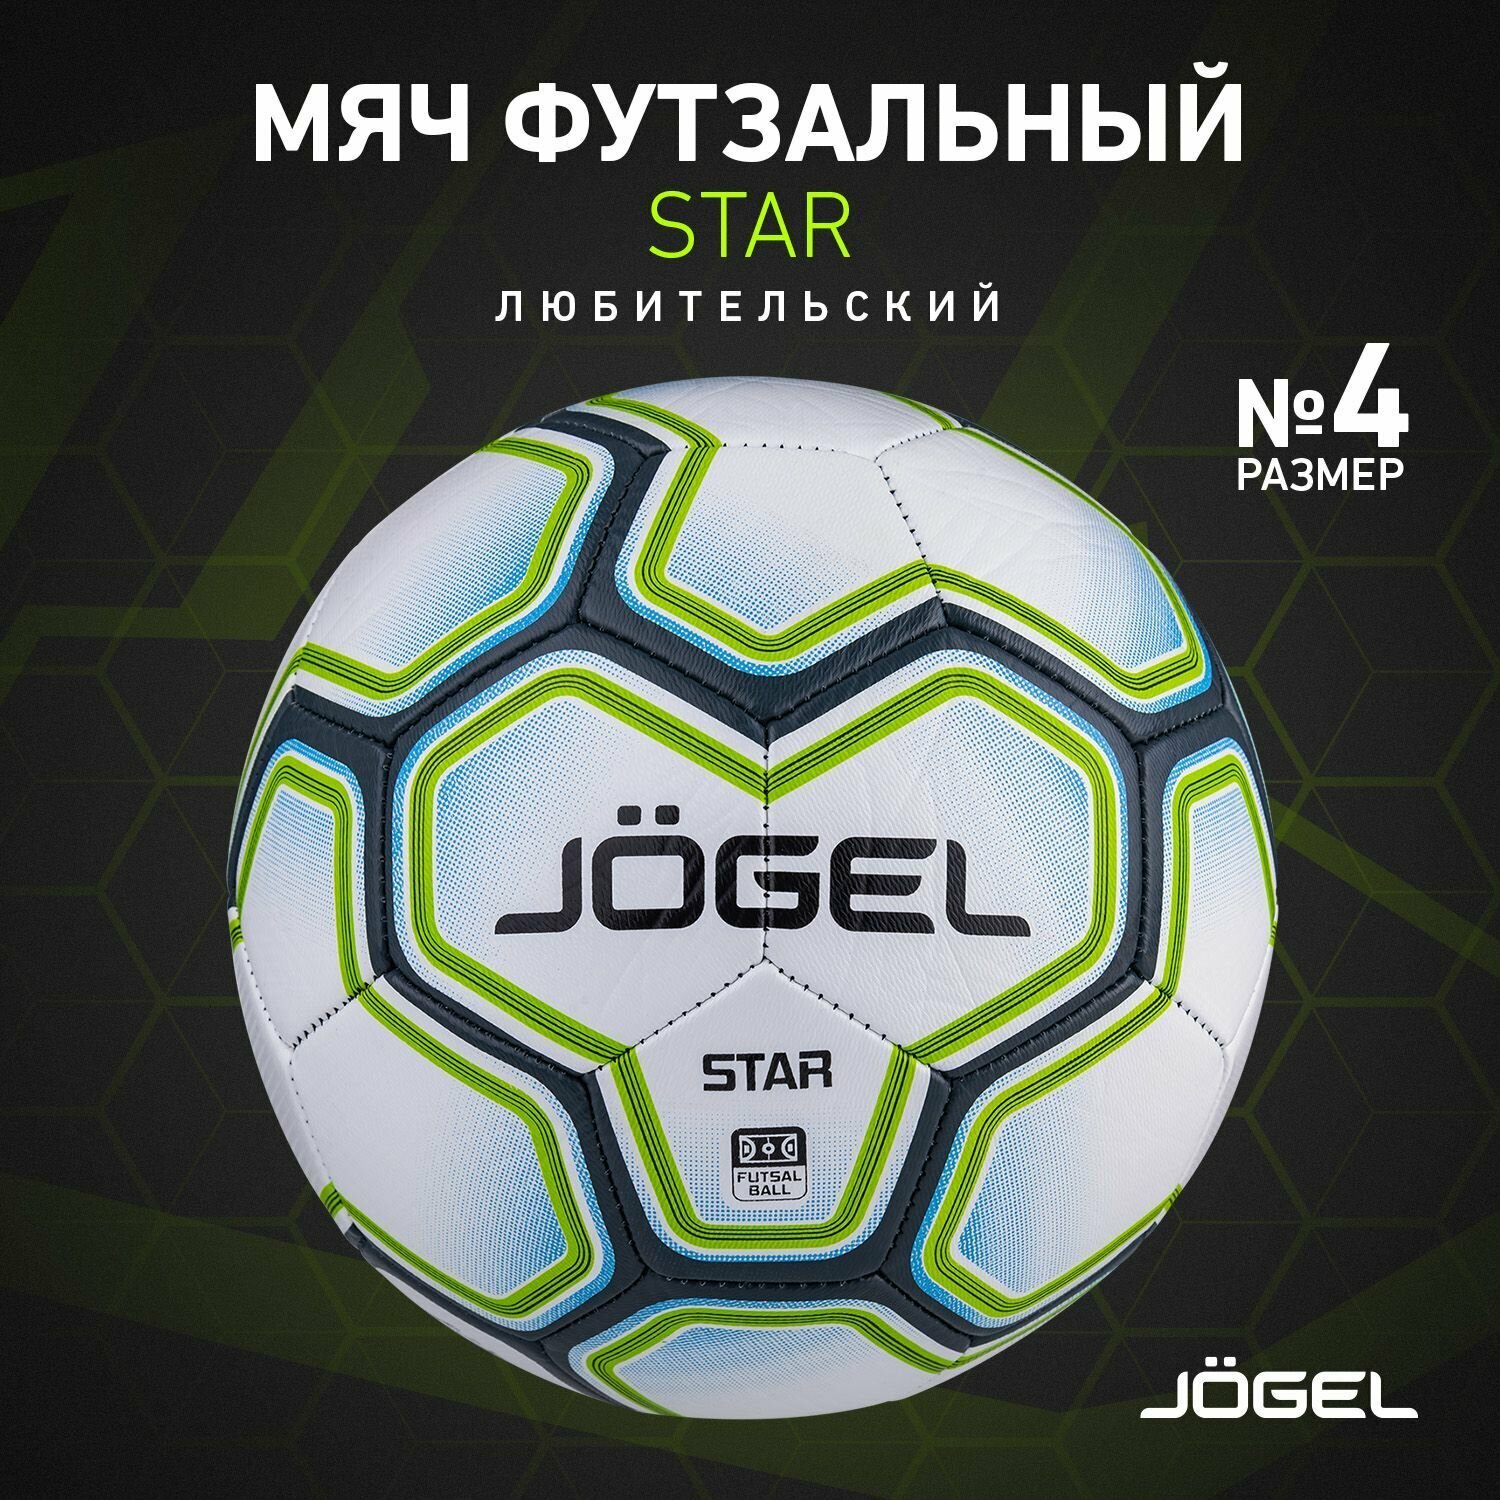 Мяч футзальный Jogel Star размер 4